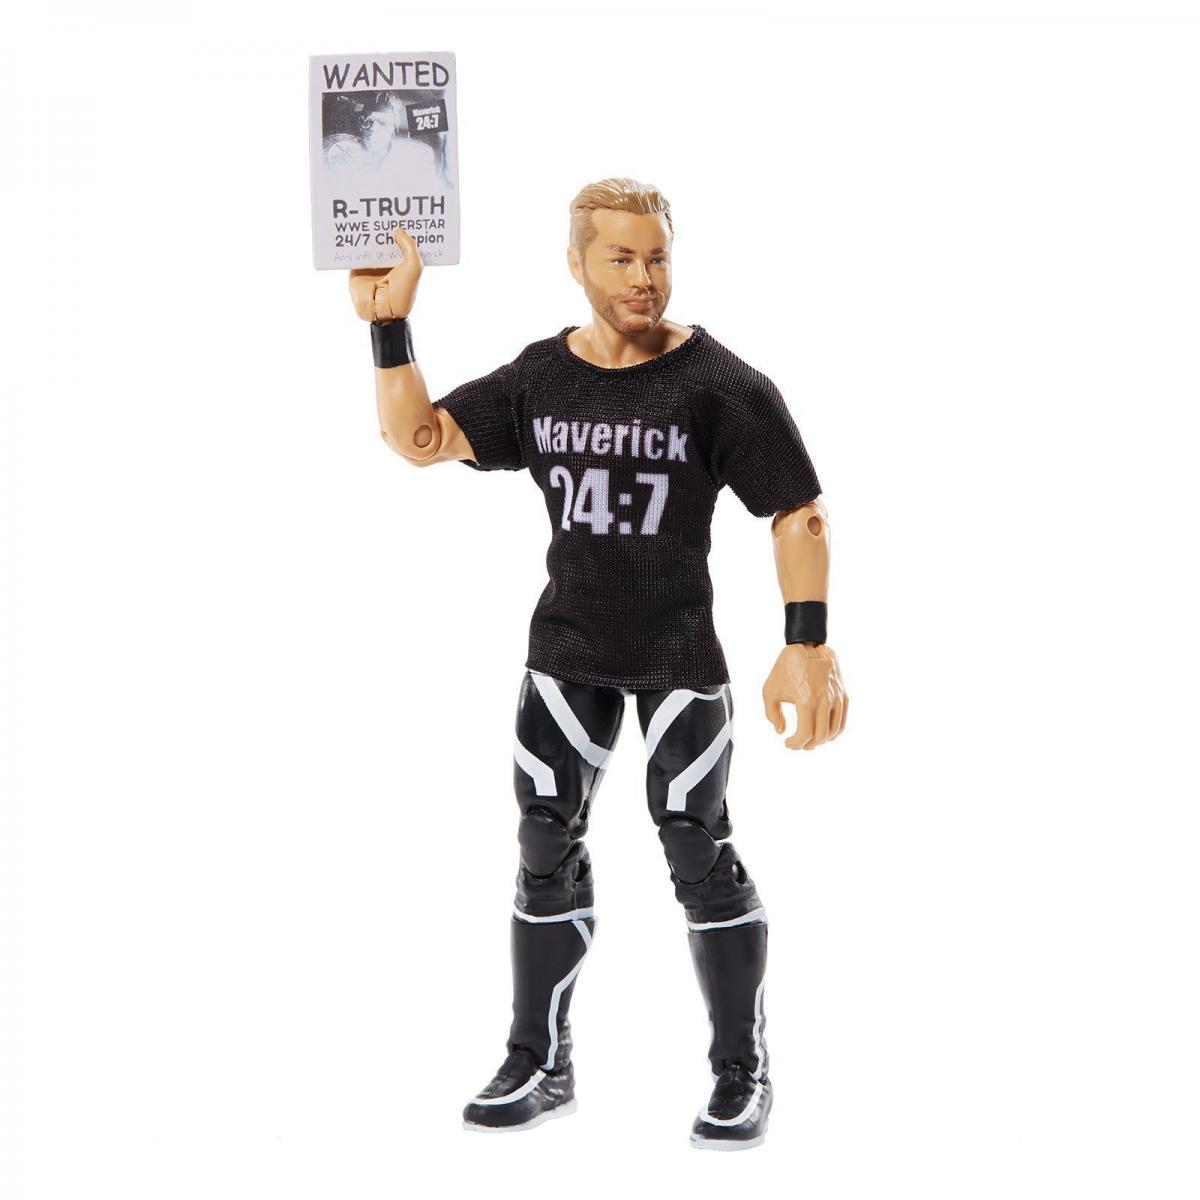 2020 WWE Mattel Elite Collection Series 78 Drake Maverick